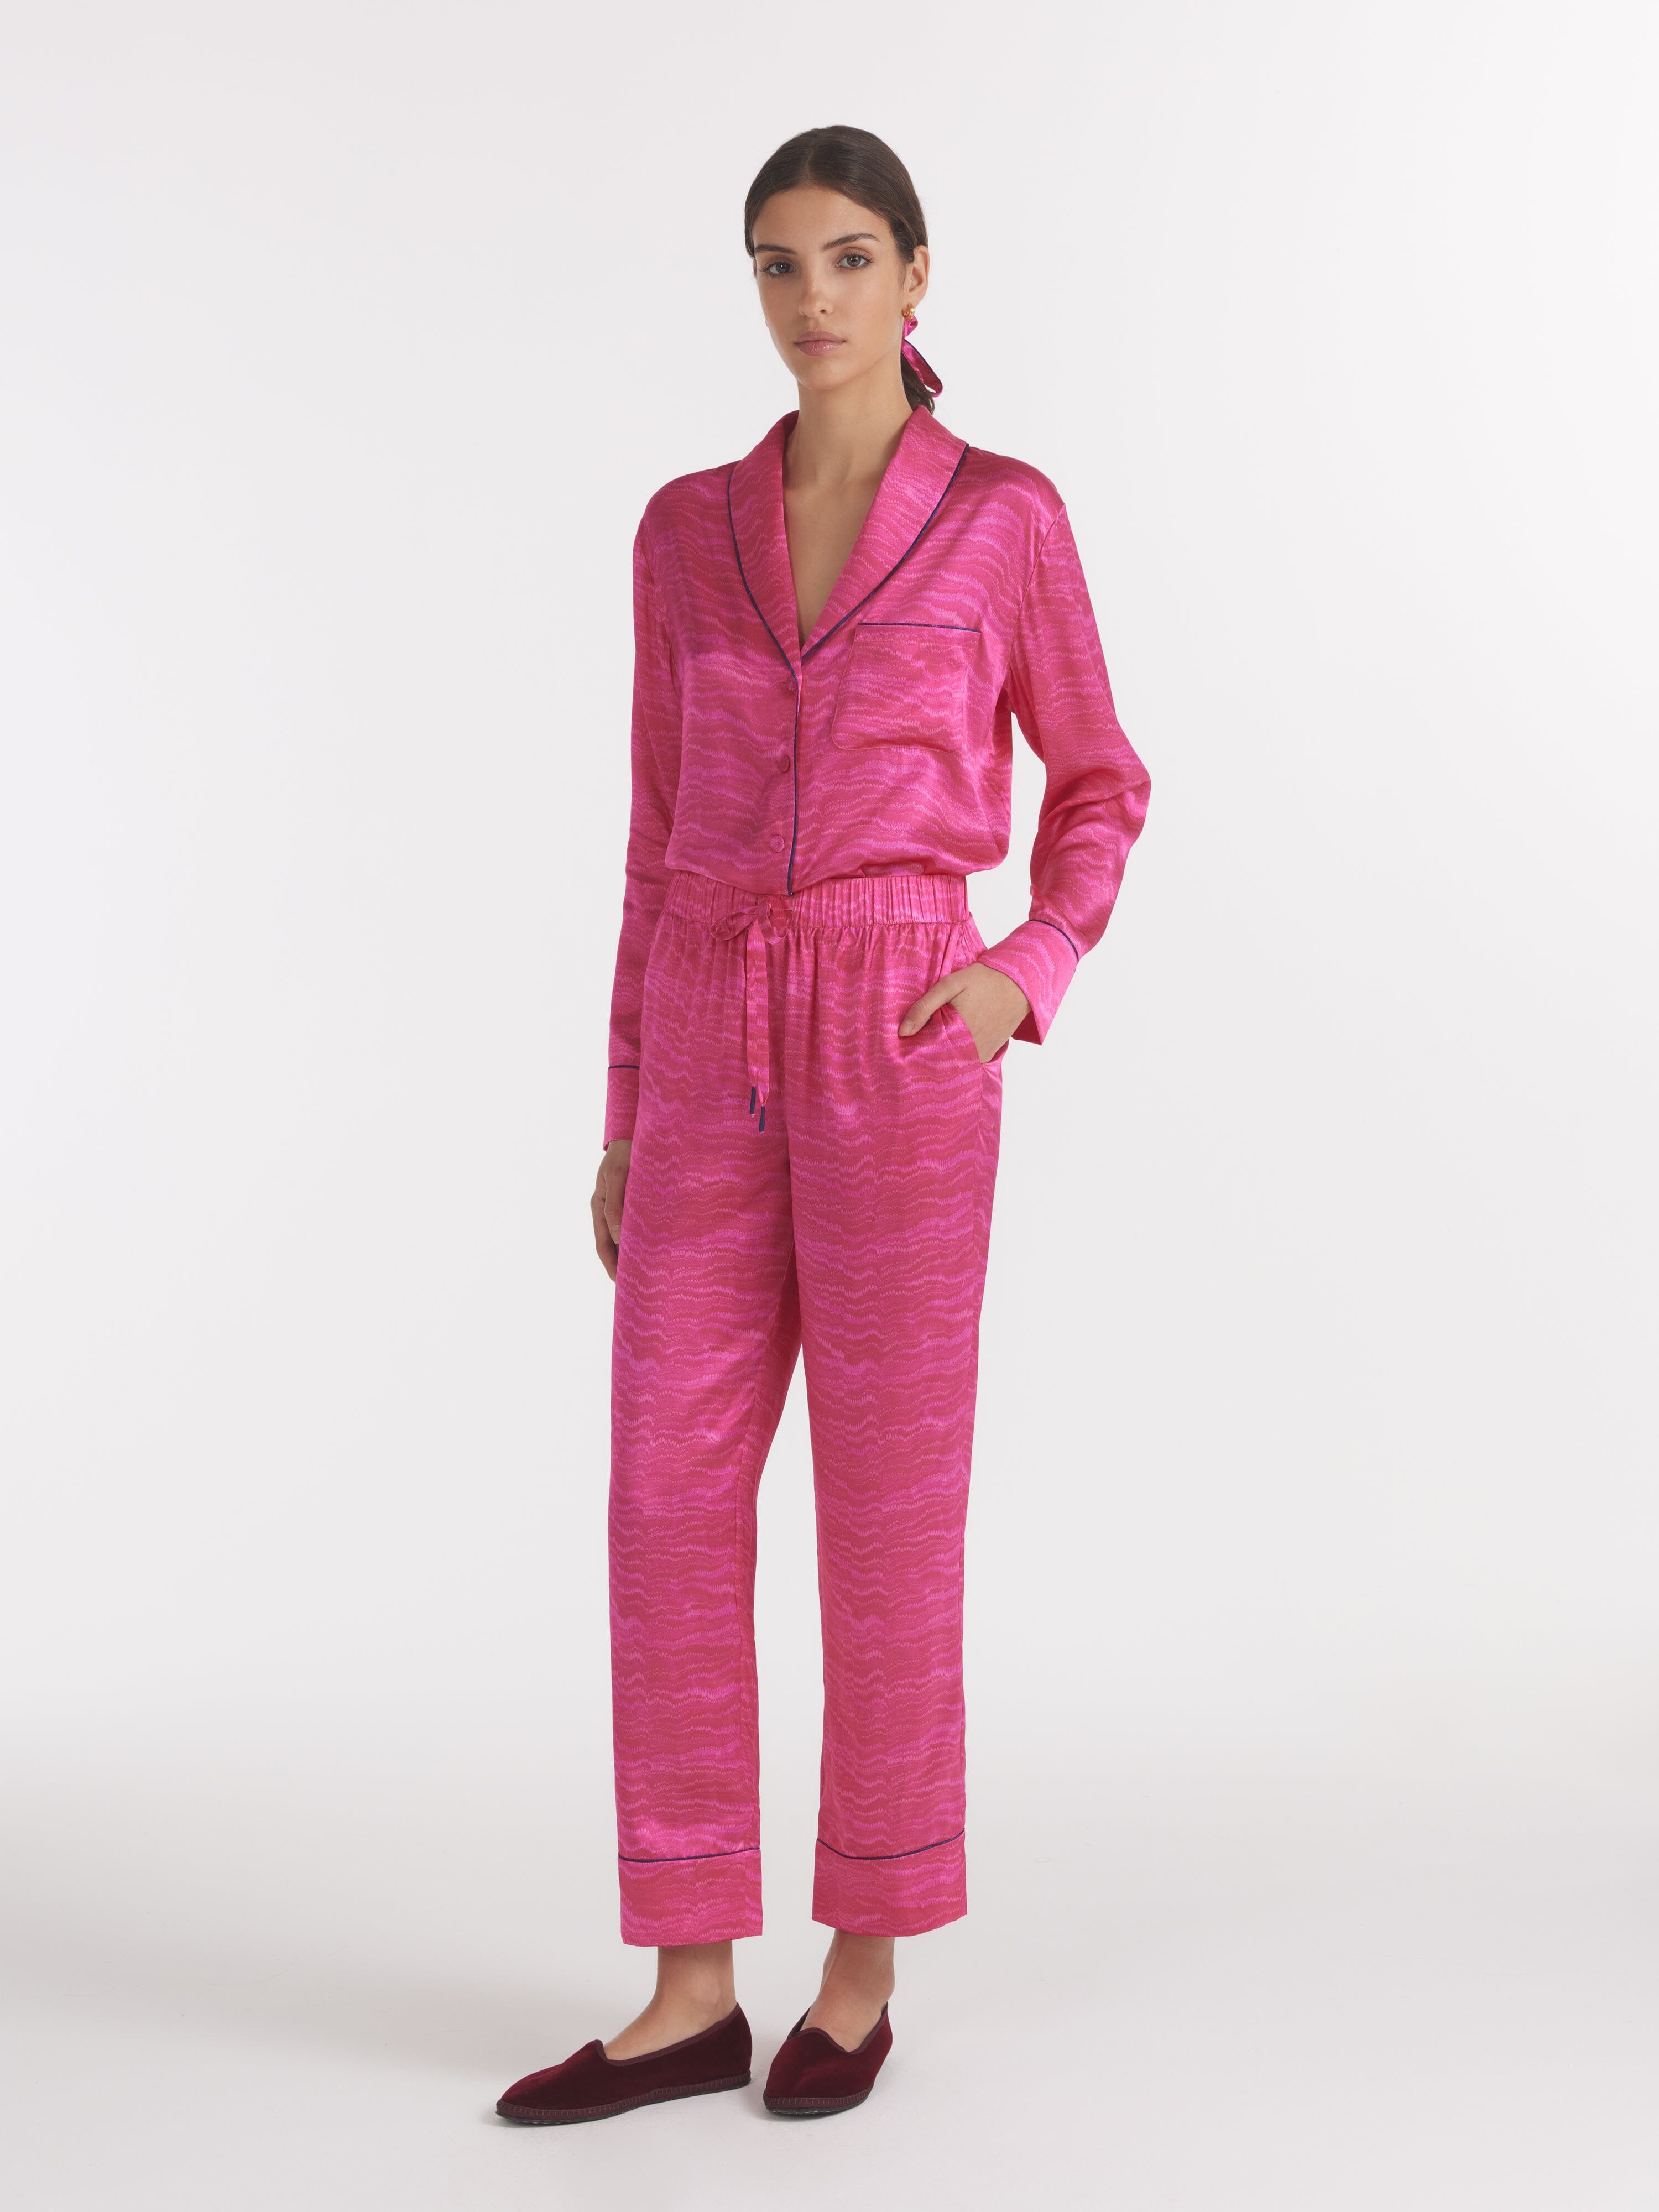 Women's Lounge PJ Set in Pink Marbling